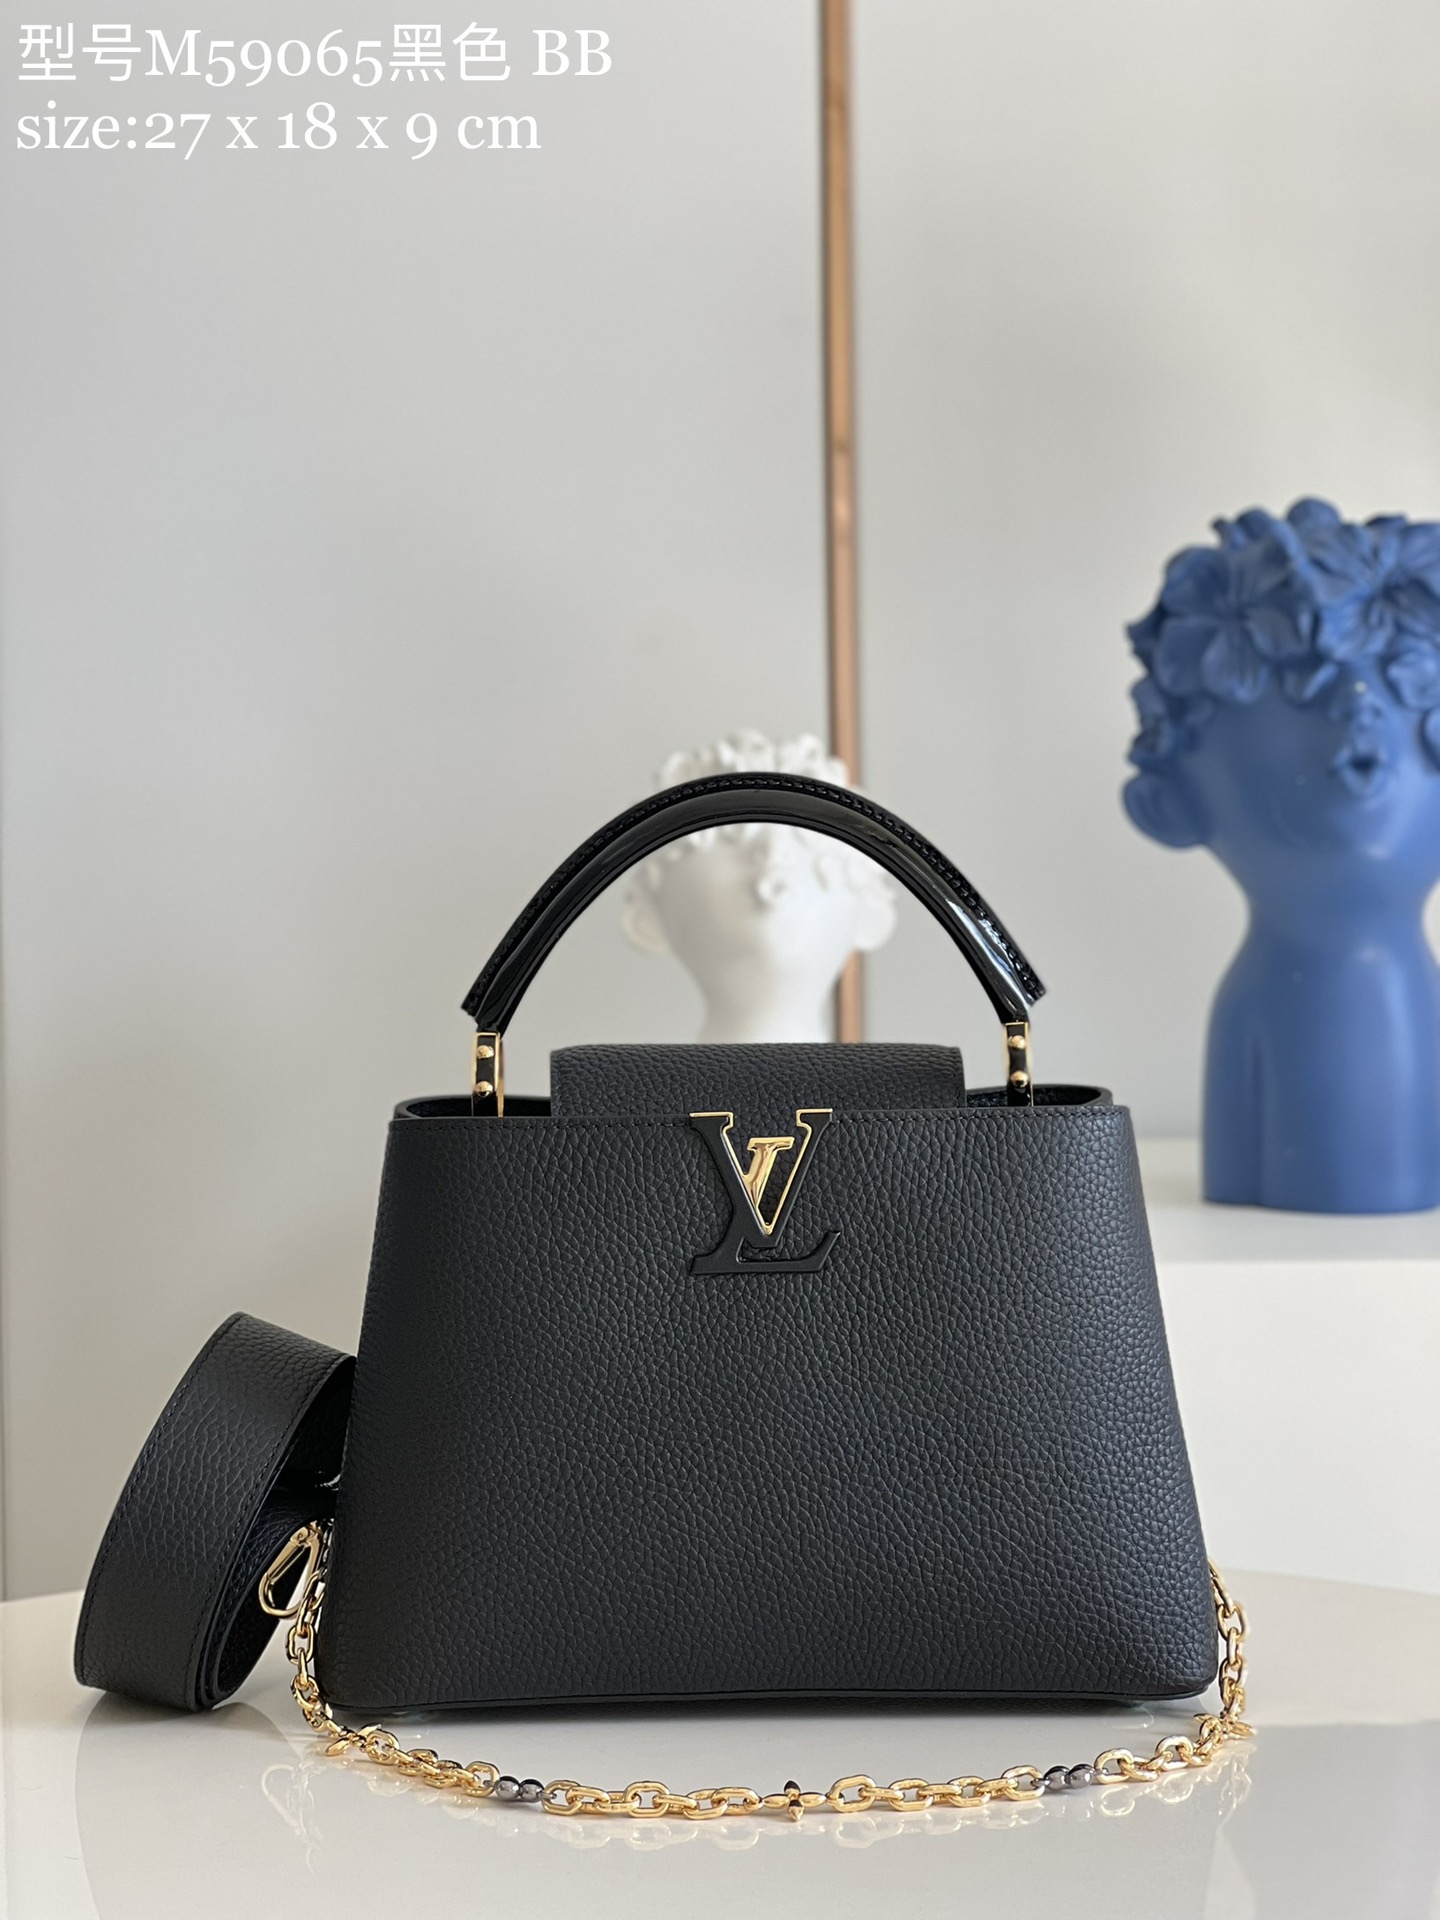 Louis Vuitton LV Capucines Bags Handbags Best Quality Designer
 Black Taurillon Cowhide Chains M59065